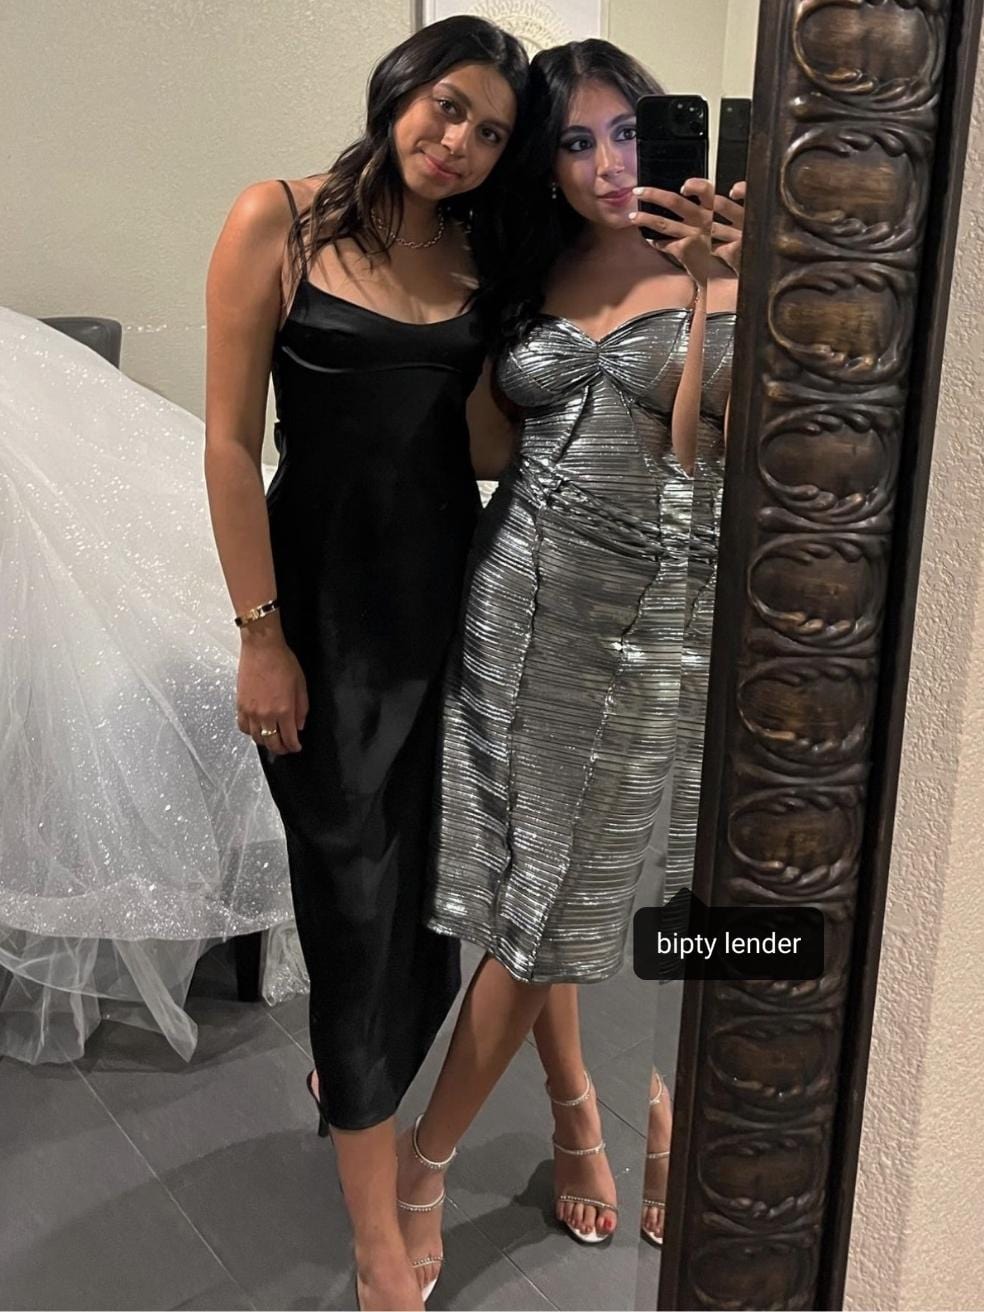 Mila Midi Dress in Silver